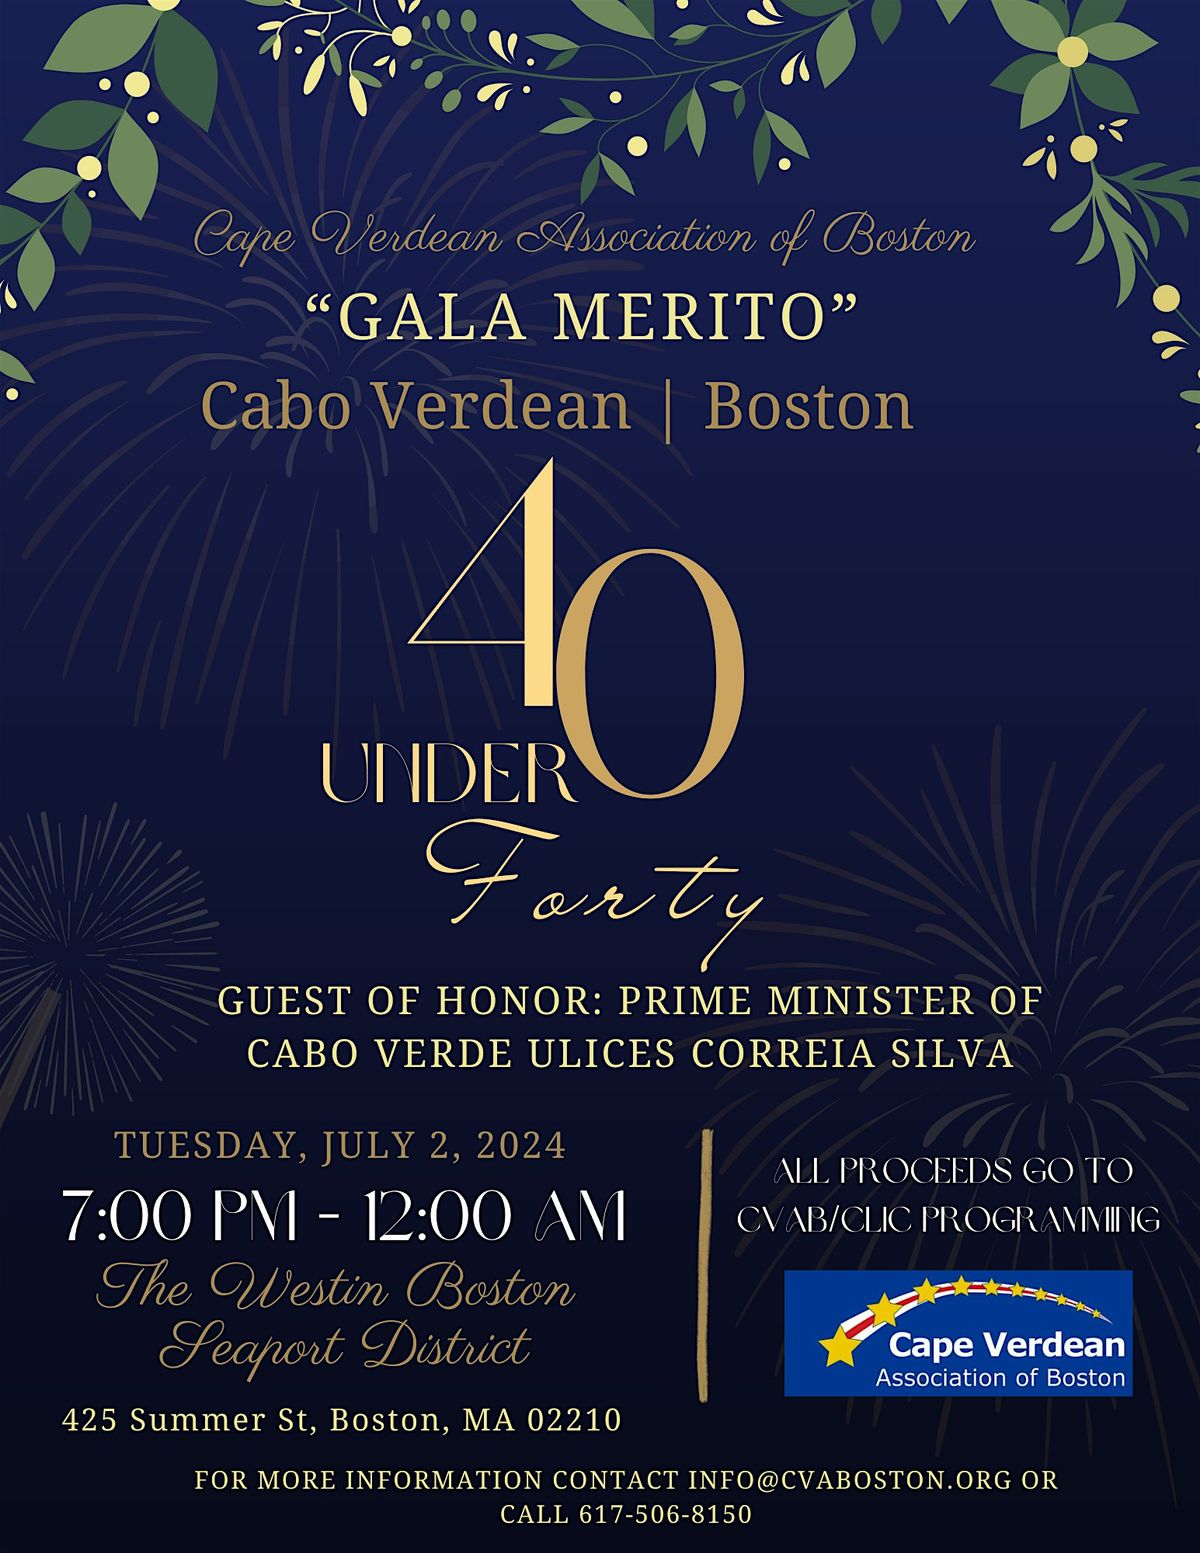 Annual Cabo Verdean 40 under 40 Gala Merito